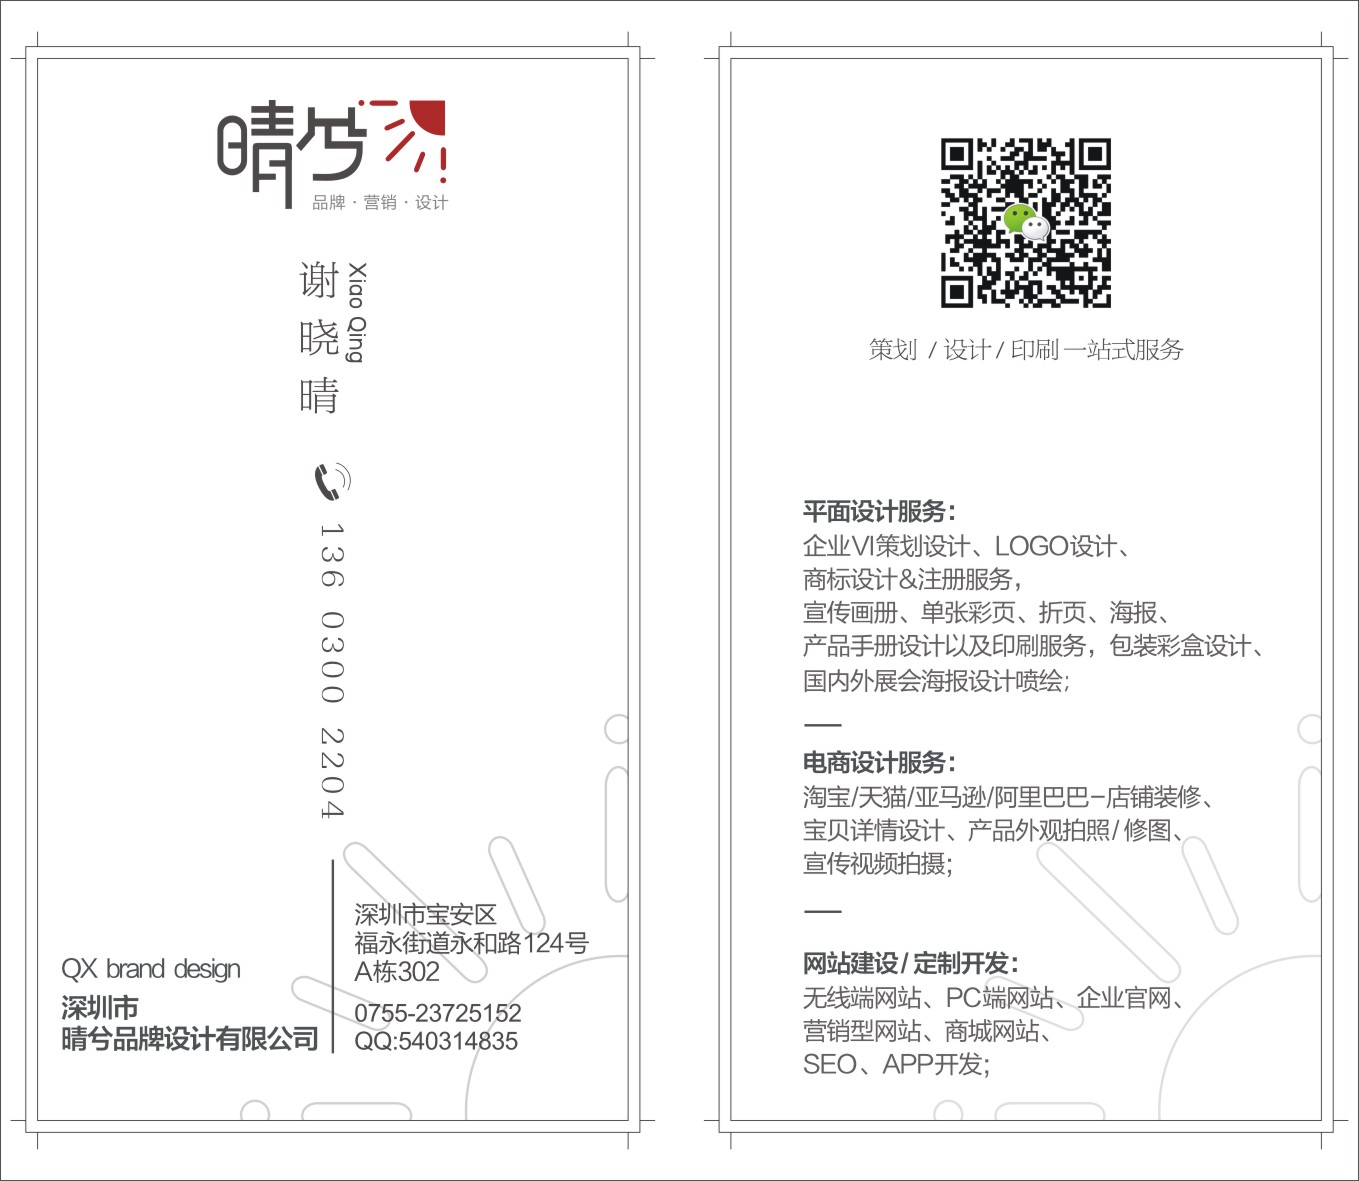 福永商标设计 传媒广电画册设计 企业展示画册设计 彩页折页设计